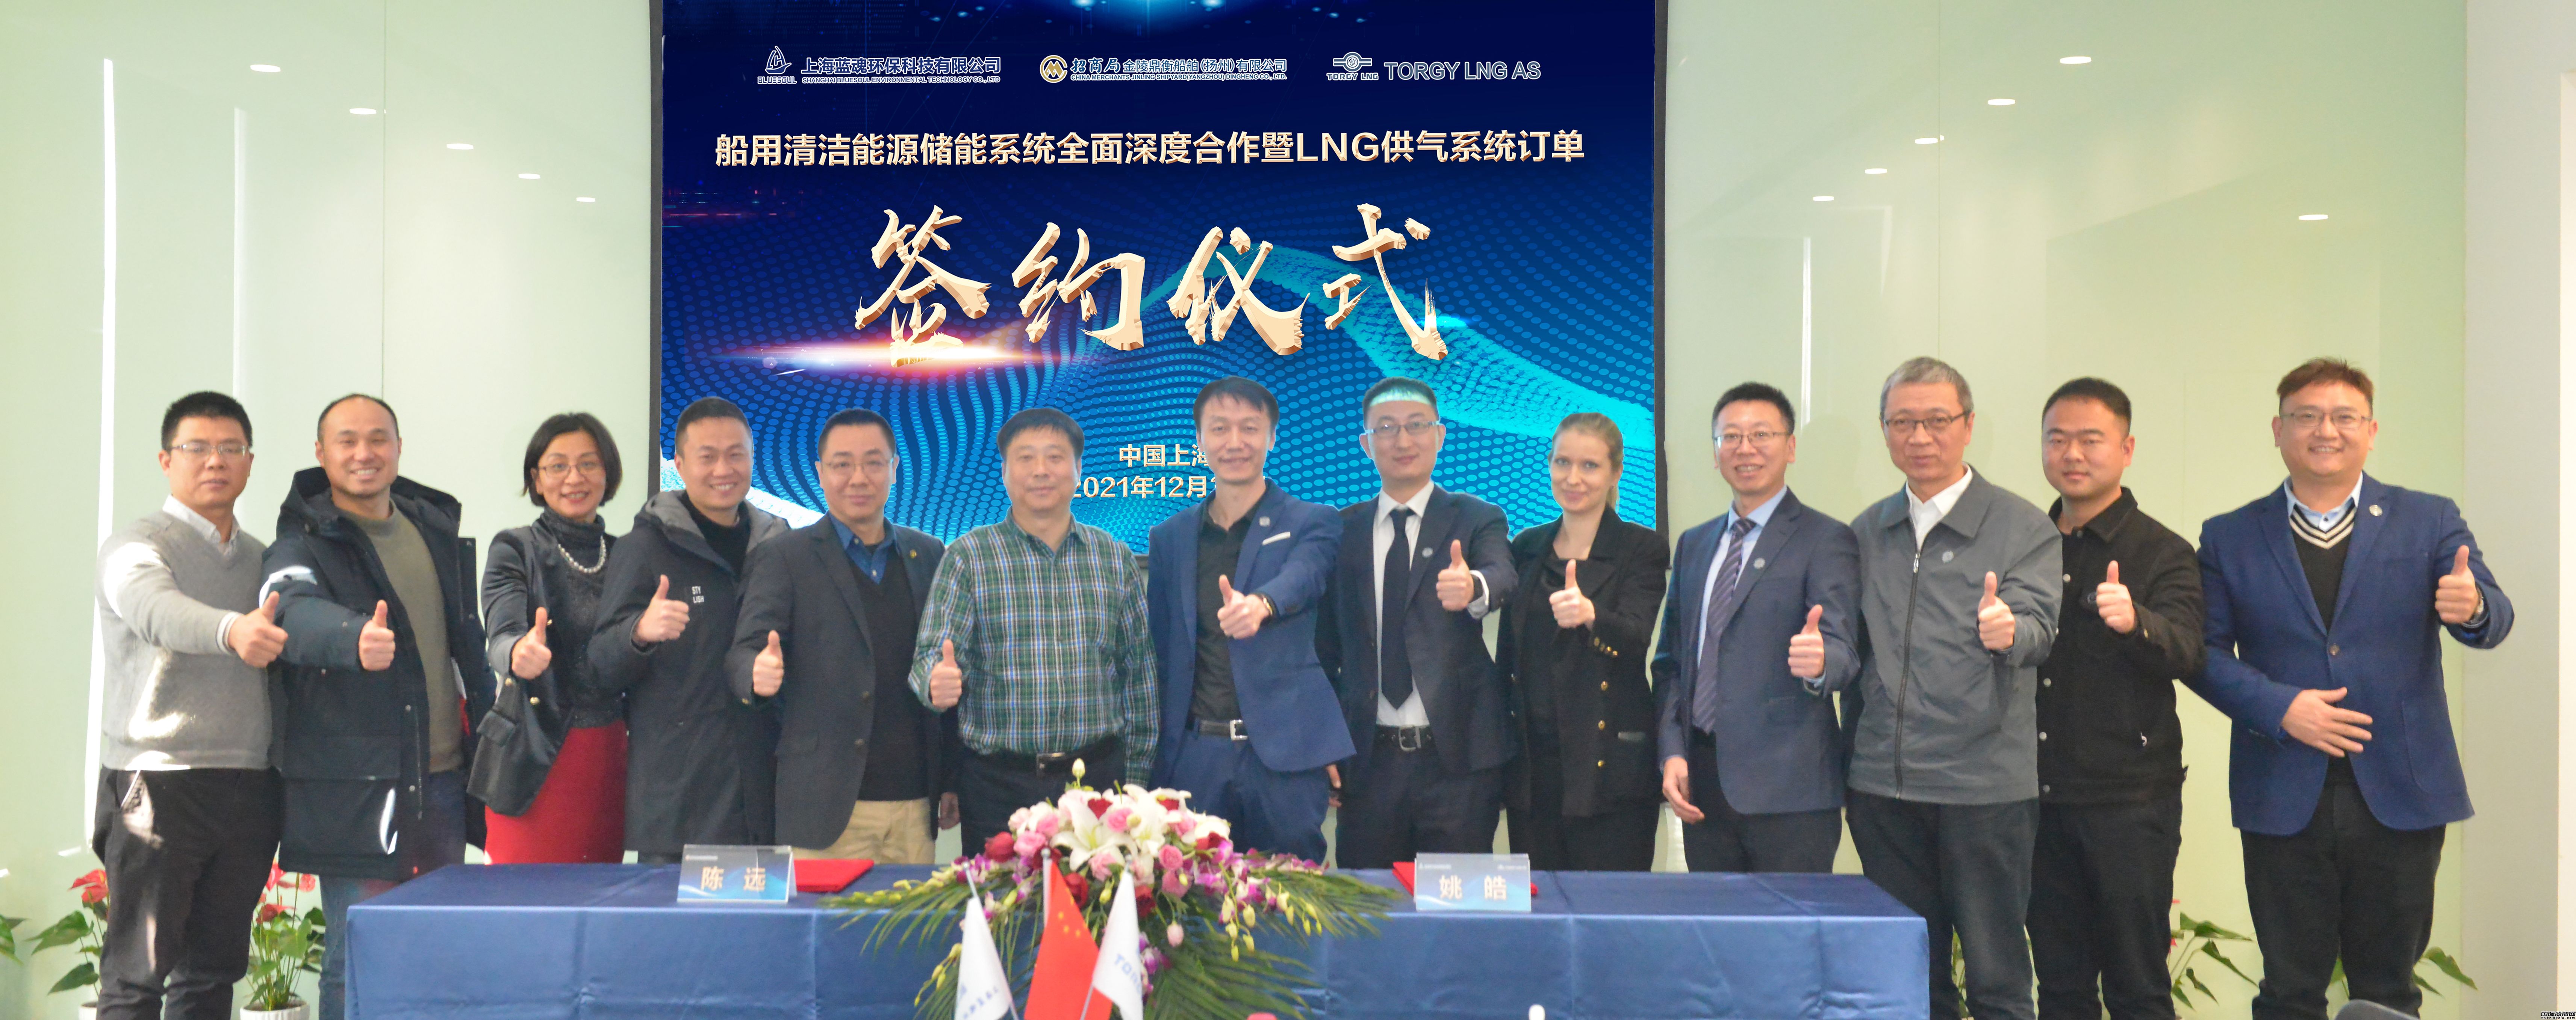 招商工业扬州金陵与上海蓝魂签署8套LNG供气系统订单暨清洁能源储能系统全面深度合作协议